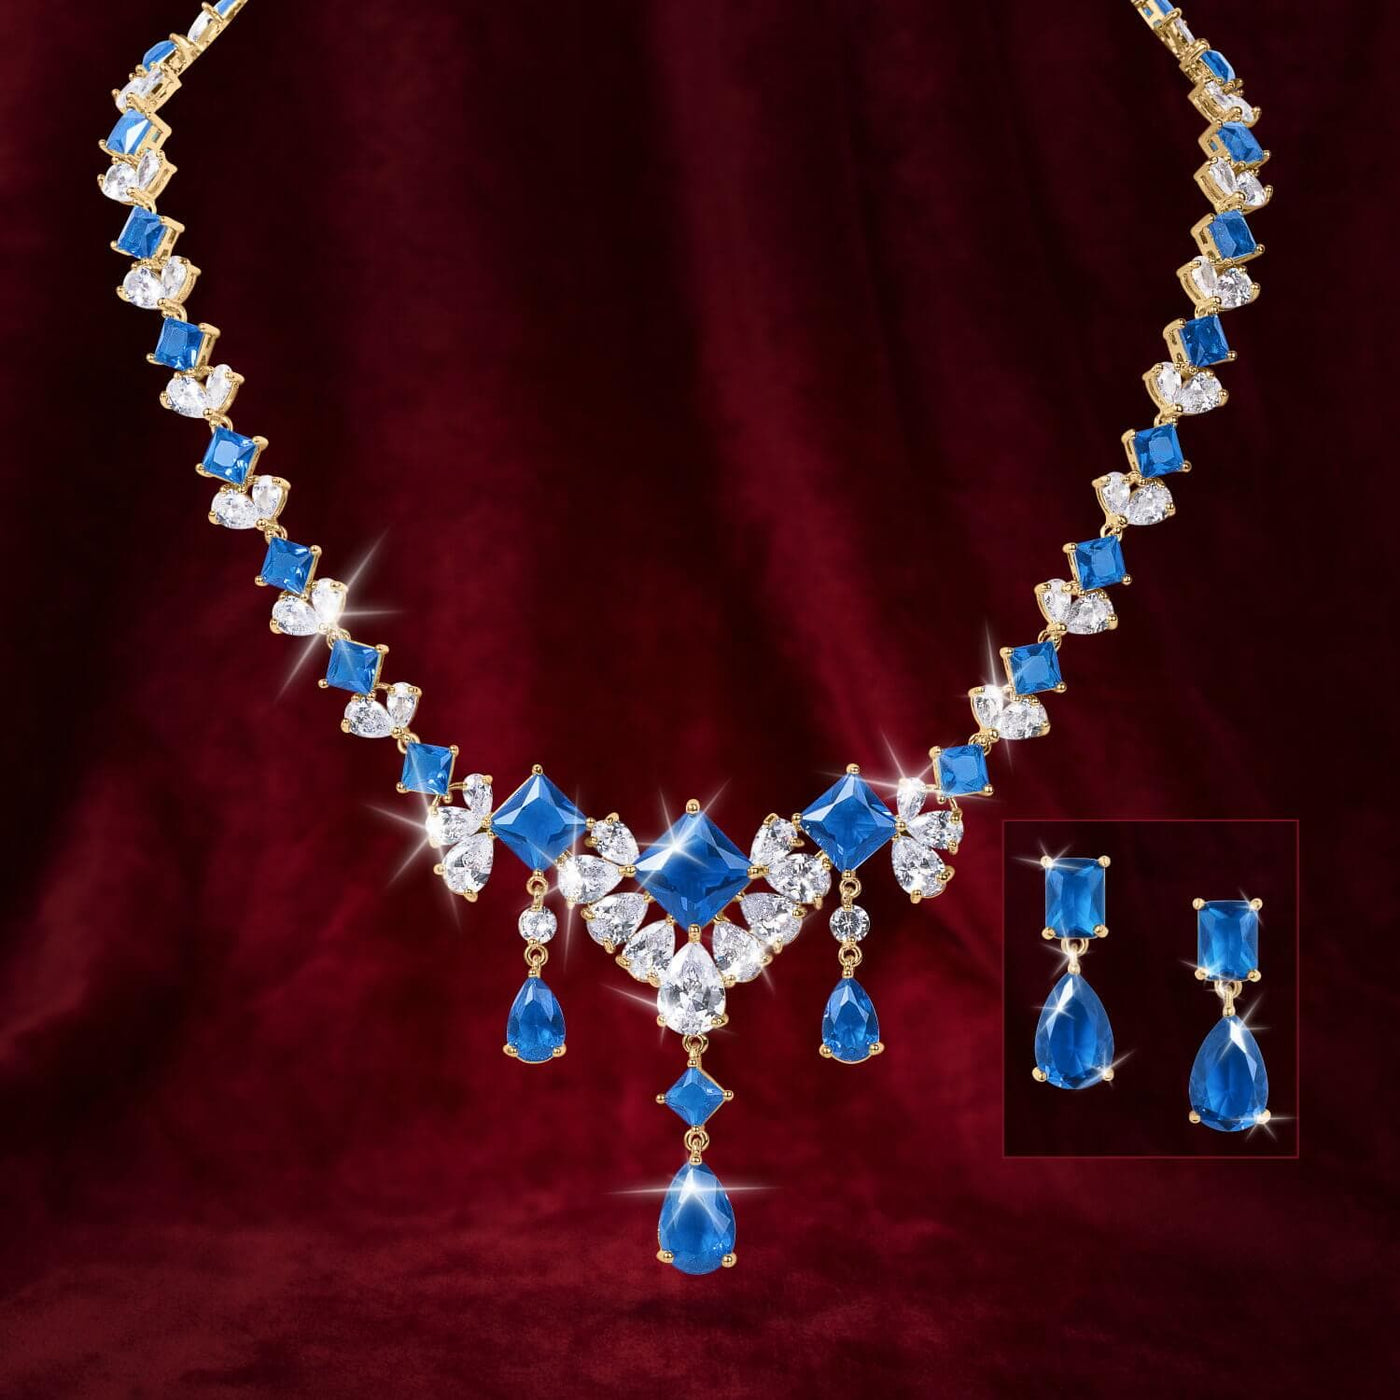 Daniel Steiger Millionaire Azure Necklace